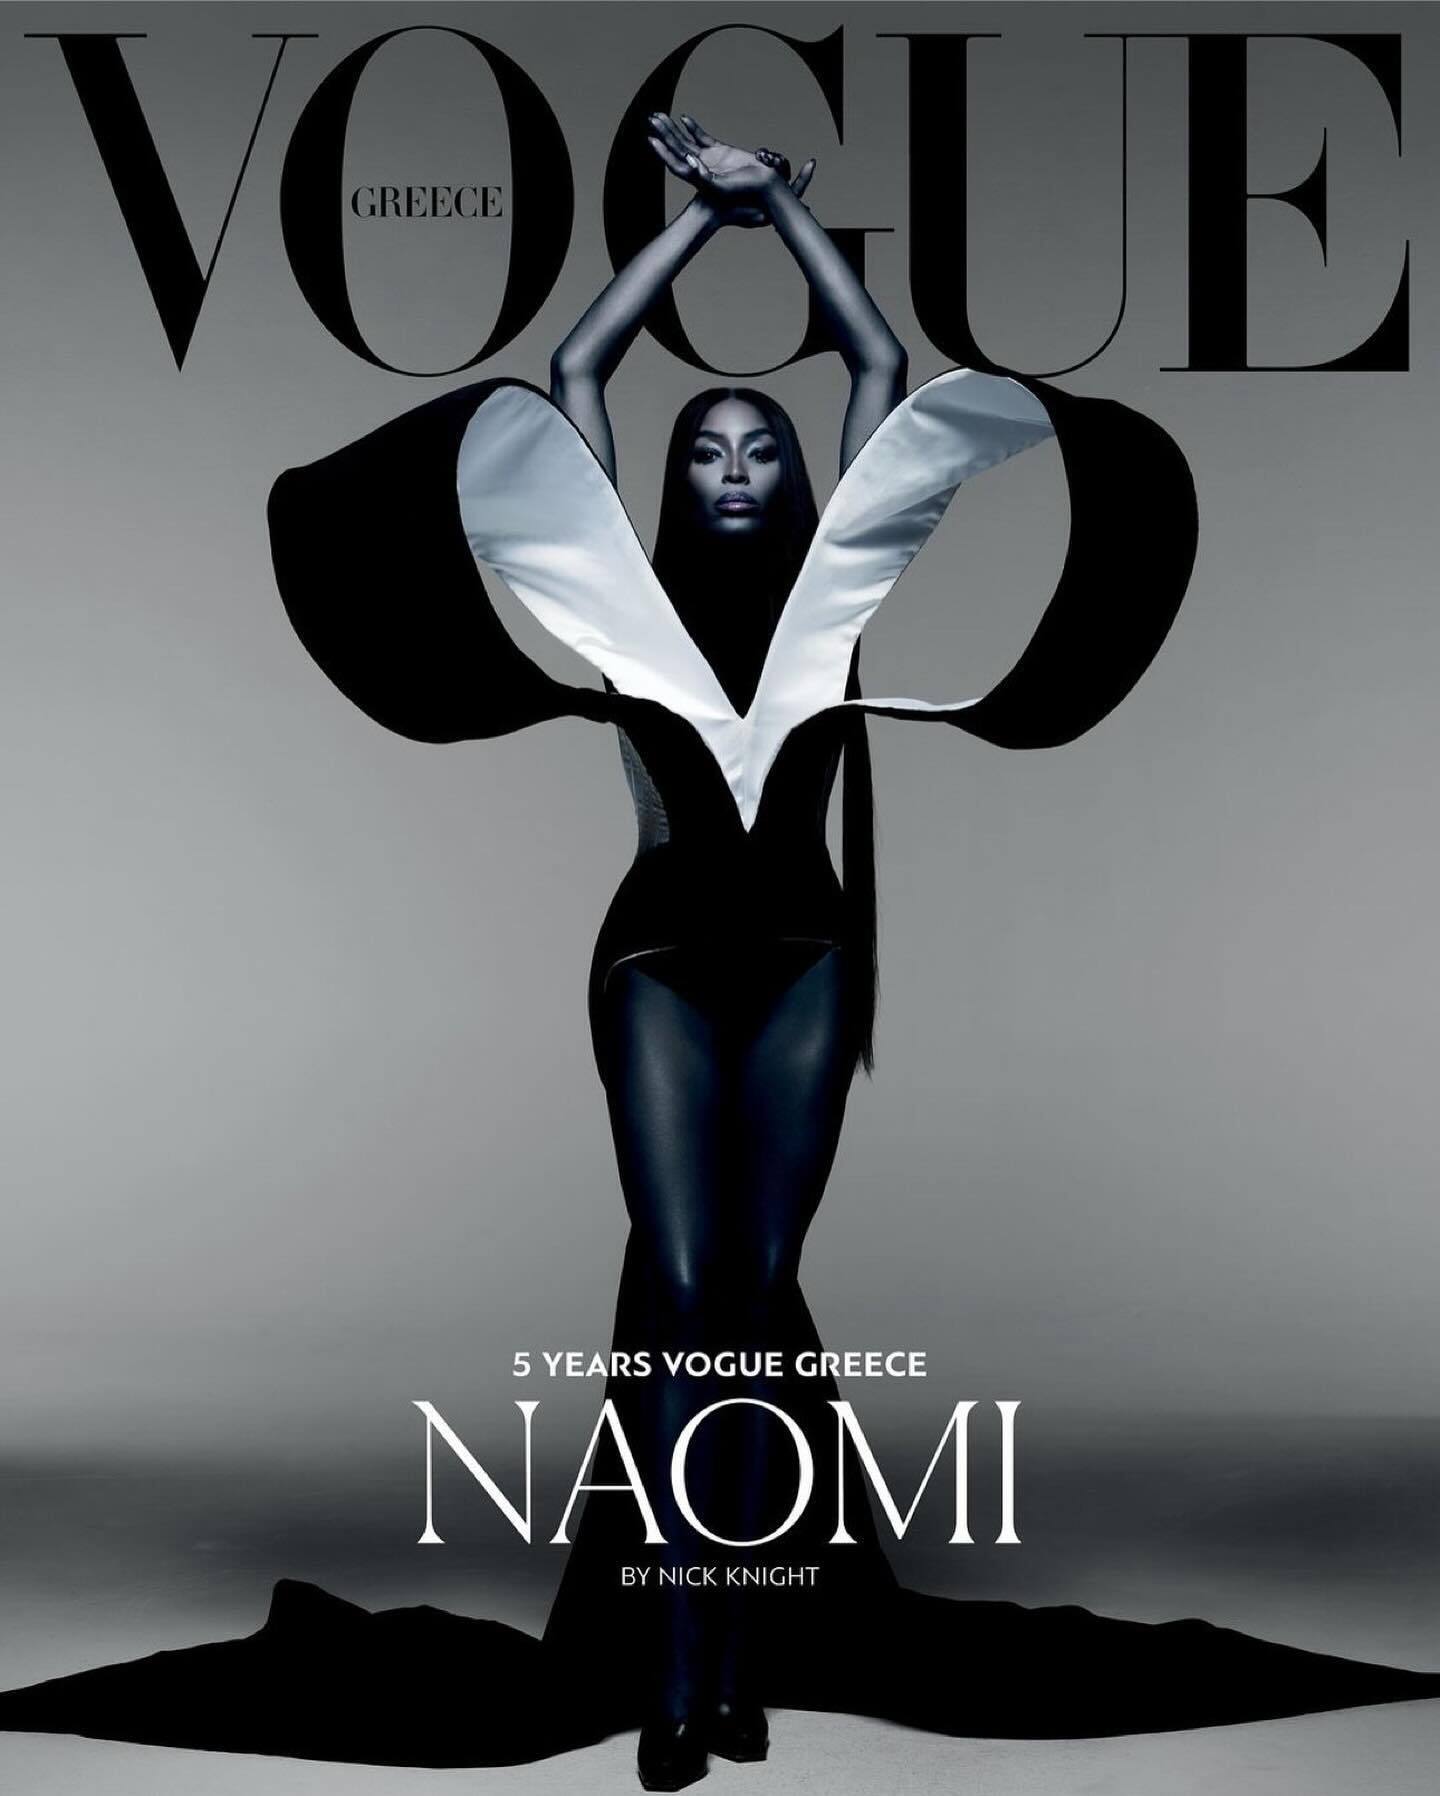 53-річна Наомі Кемпбелл знялася для Vogue у відвертих образах. Фото